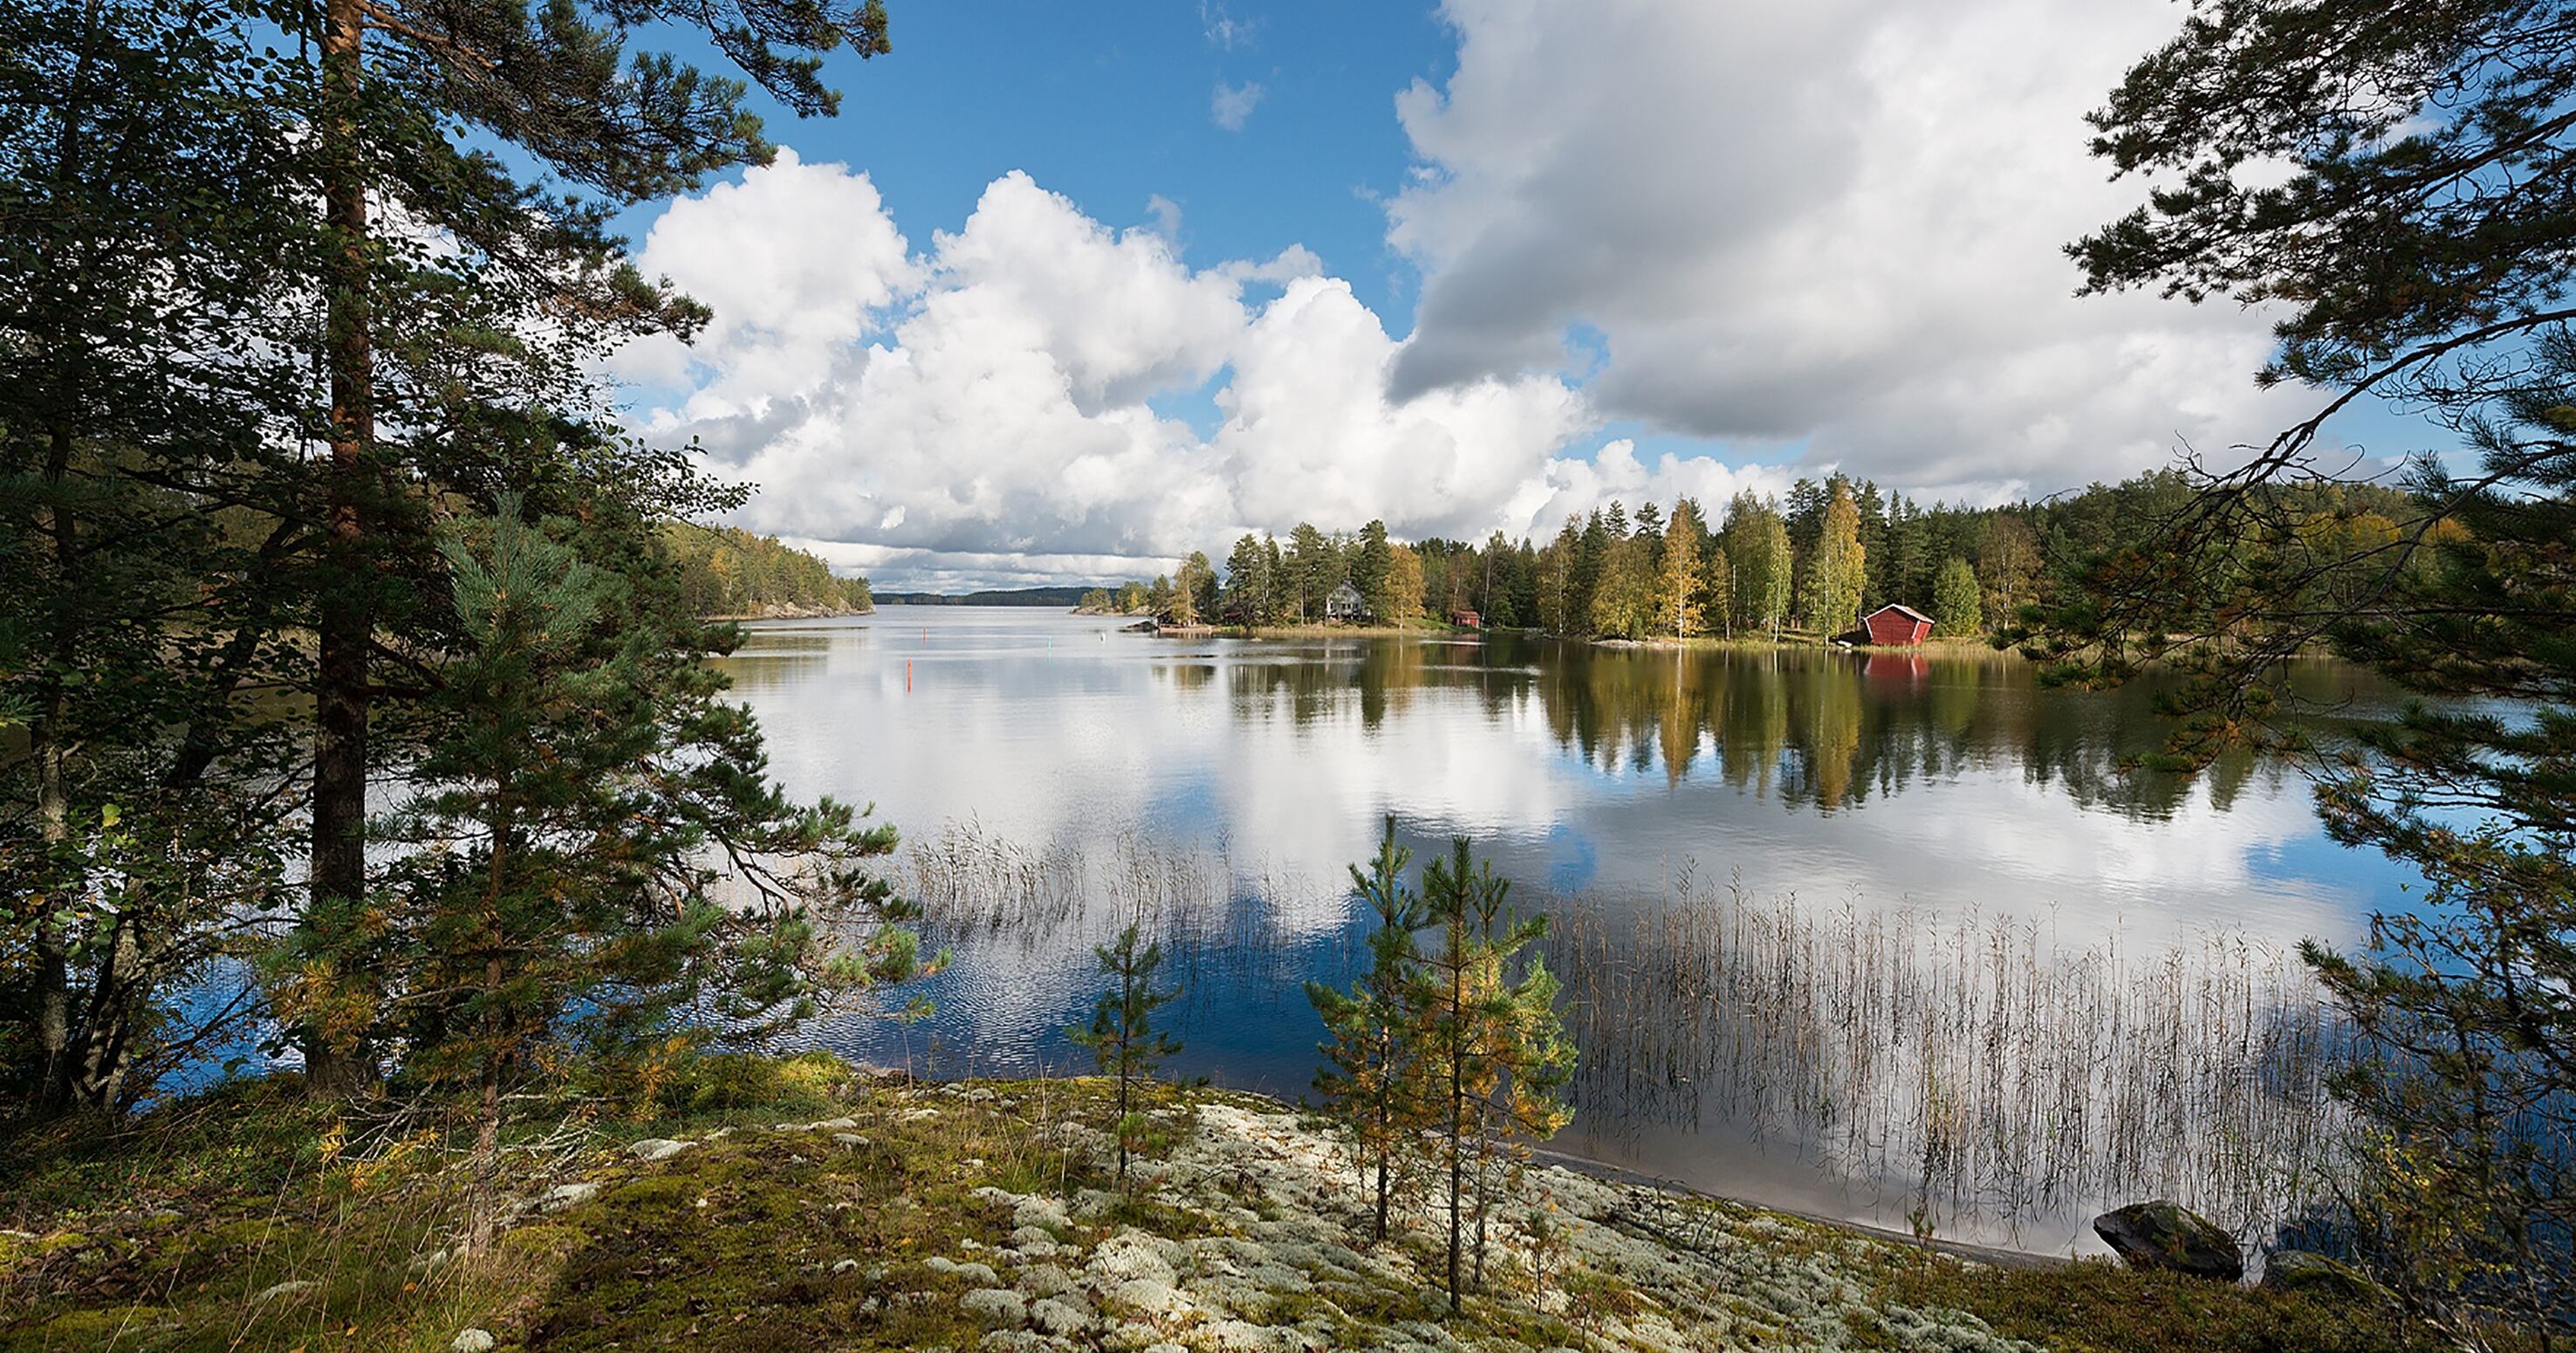 Названия финских озер. Озеро Сайма Финляндия. Озеро Штерн Финляндия. Озеро Суоми Финляндия. Озеро Лаппаярви в Финляндии.